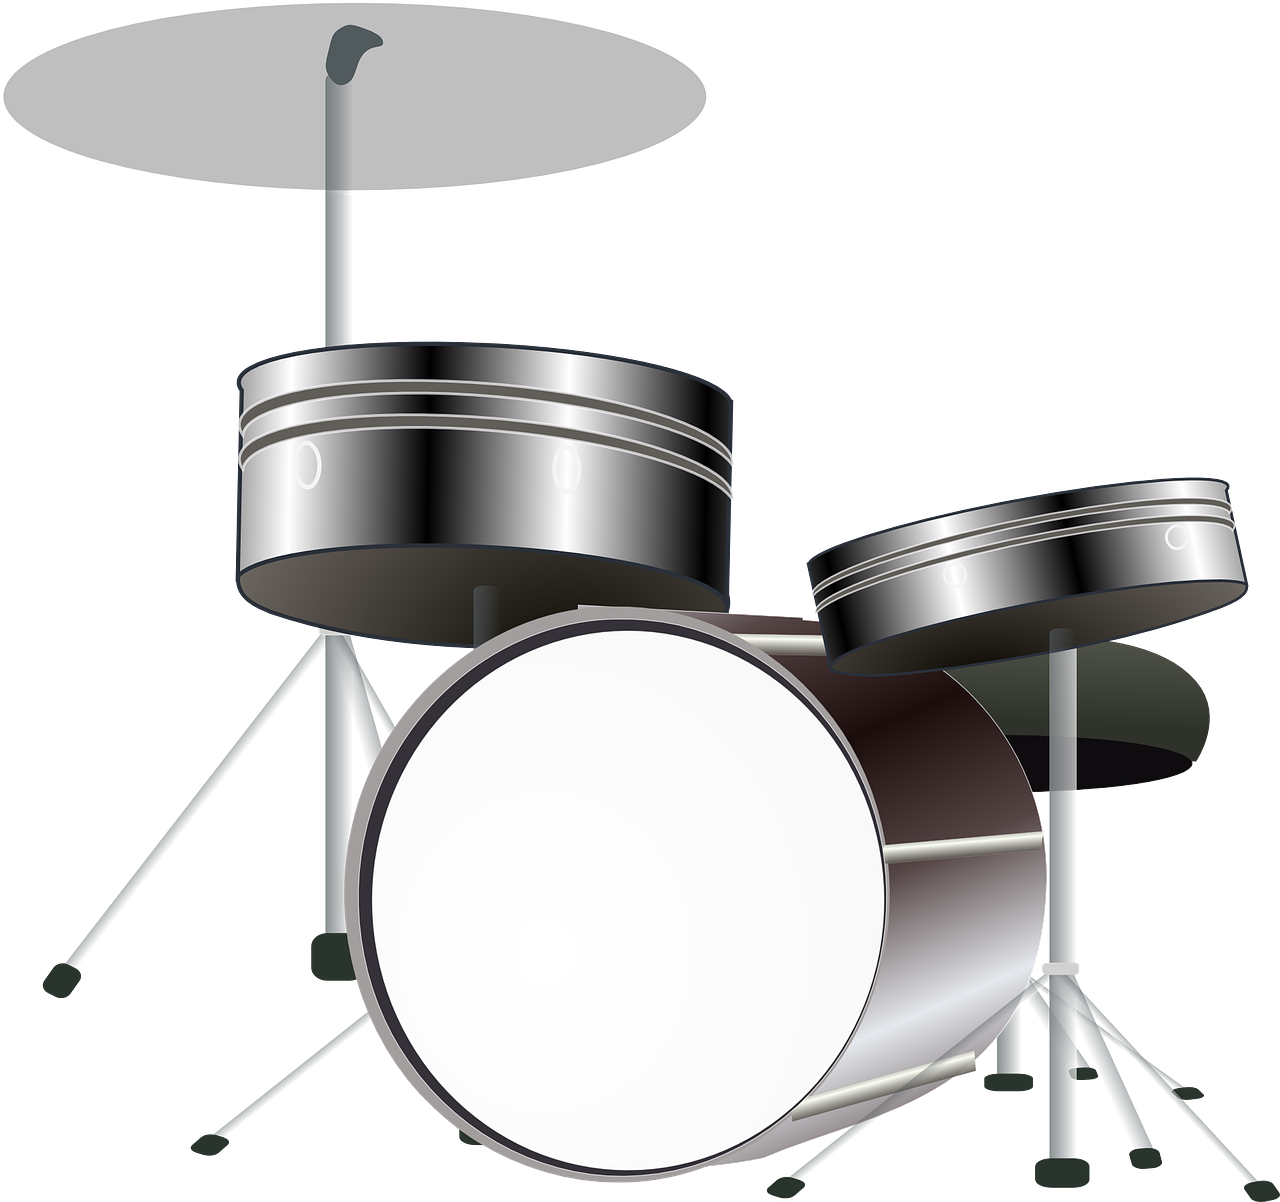 Instrumentos de Percusión: Conoce Sus Características y Ejemplos